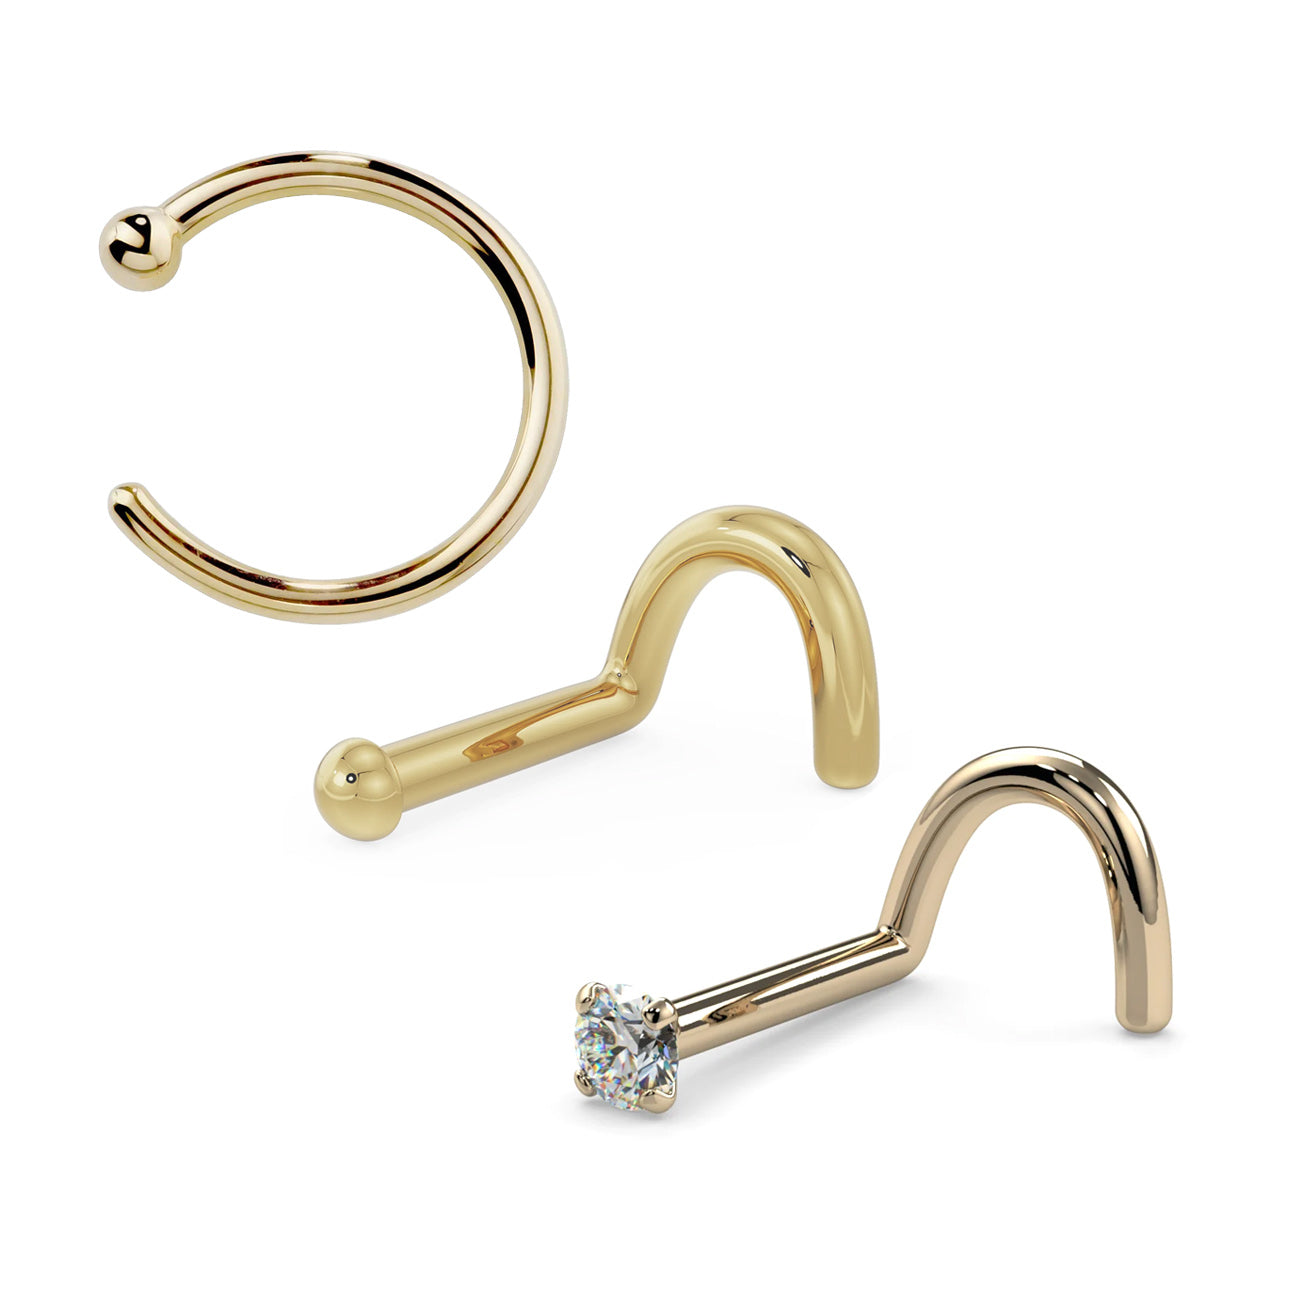 Buy 14k Gold Nose Ring, Nose Hoop, Gold Nose Hoop, Nose Piercing, Nose  Jewelry, 14k Solid Gold Nose Ring, Online in India - Etsy